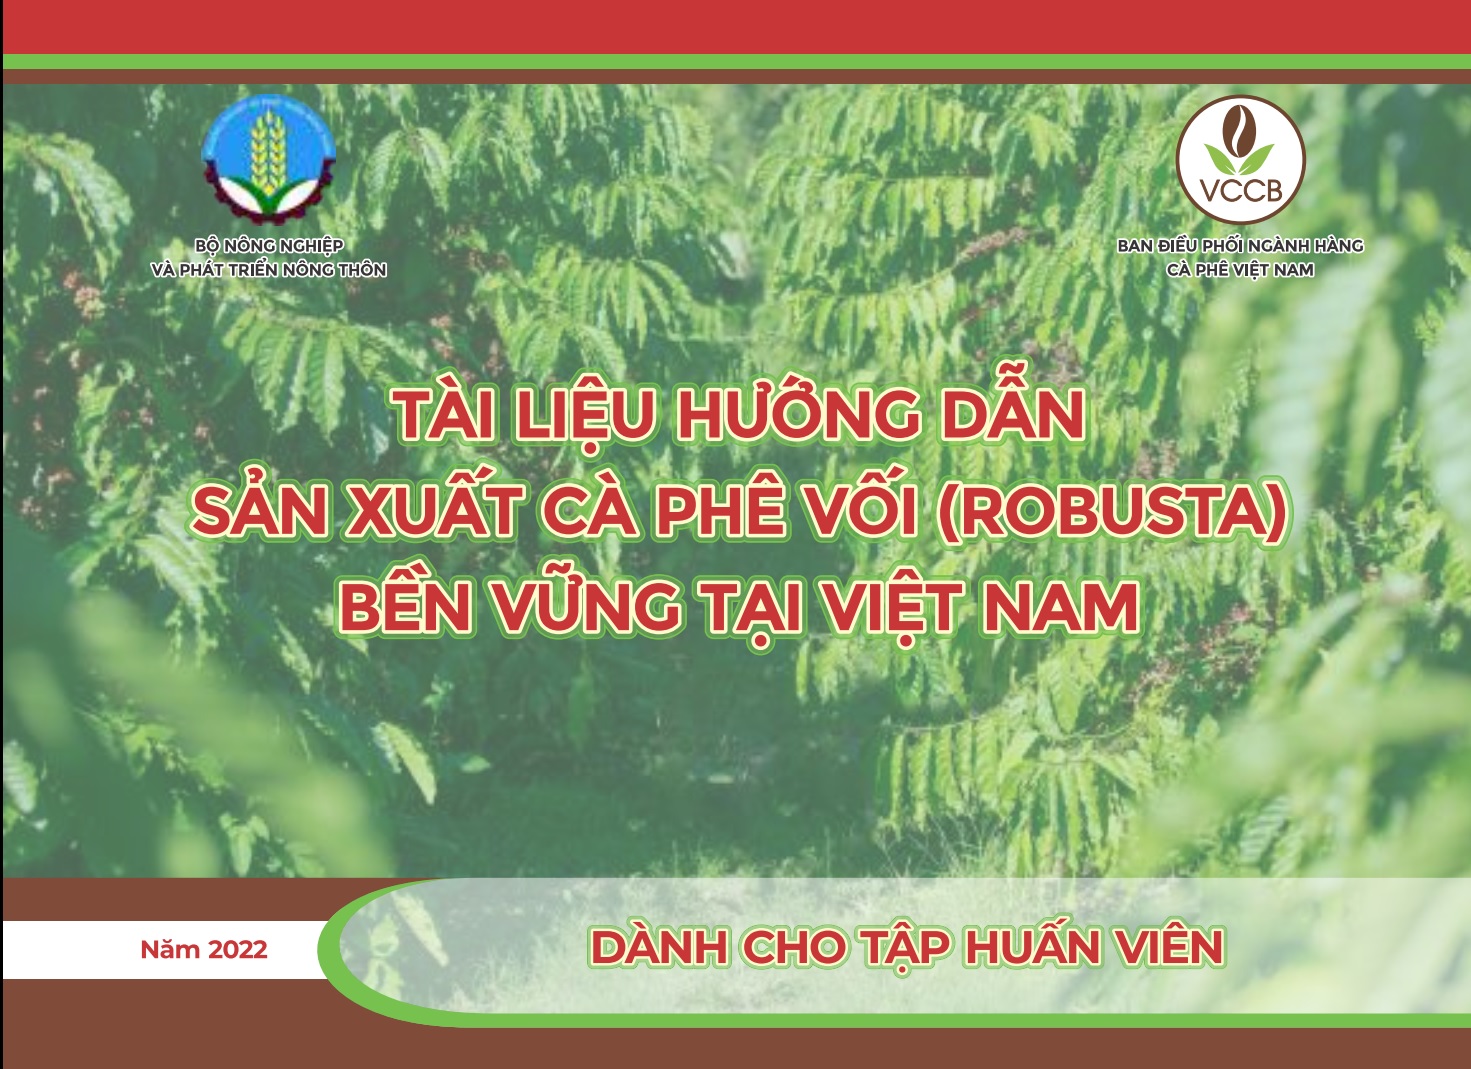 Tài liệu hướng dẫn sản xuất cà phê vối bền vững tại Việt Nam (tài liệu dành cho tập huấn viên) - năm 2022